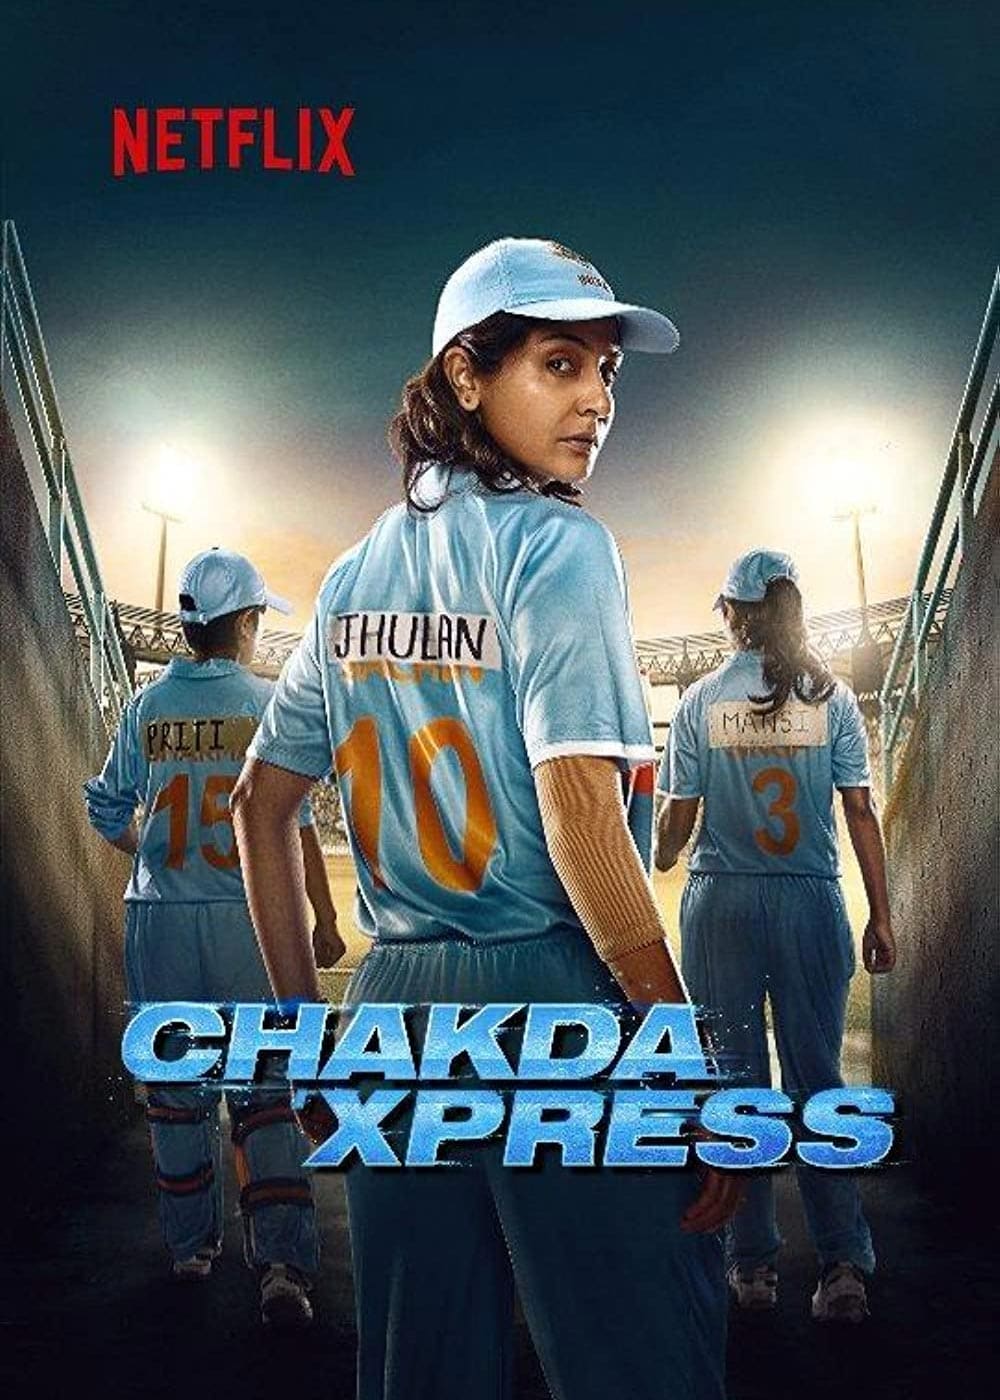 All Aboard the Chakda 'Xpress - About Netflix